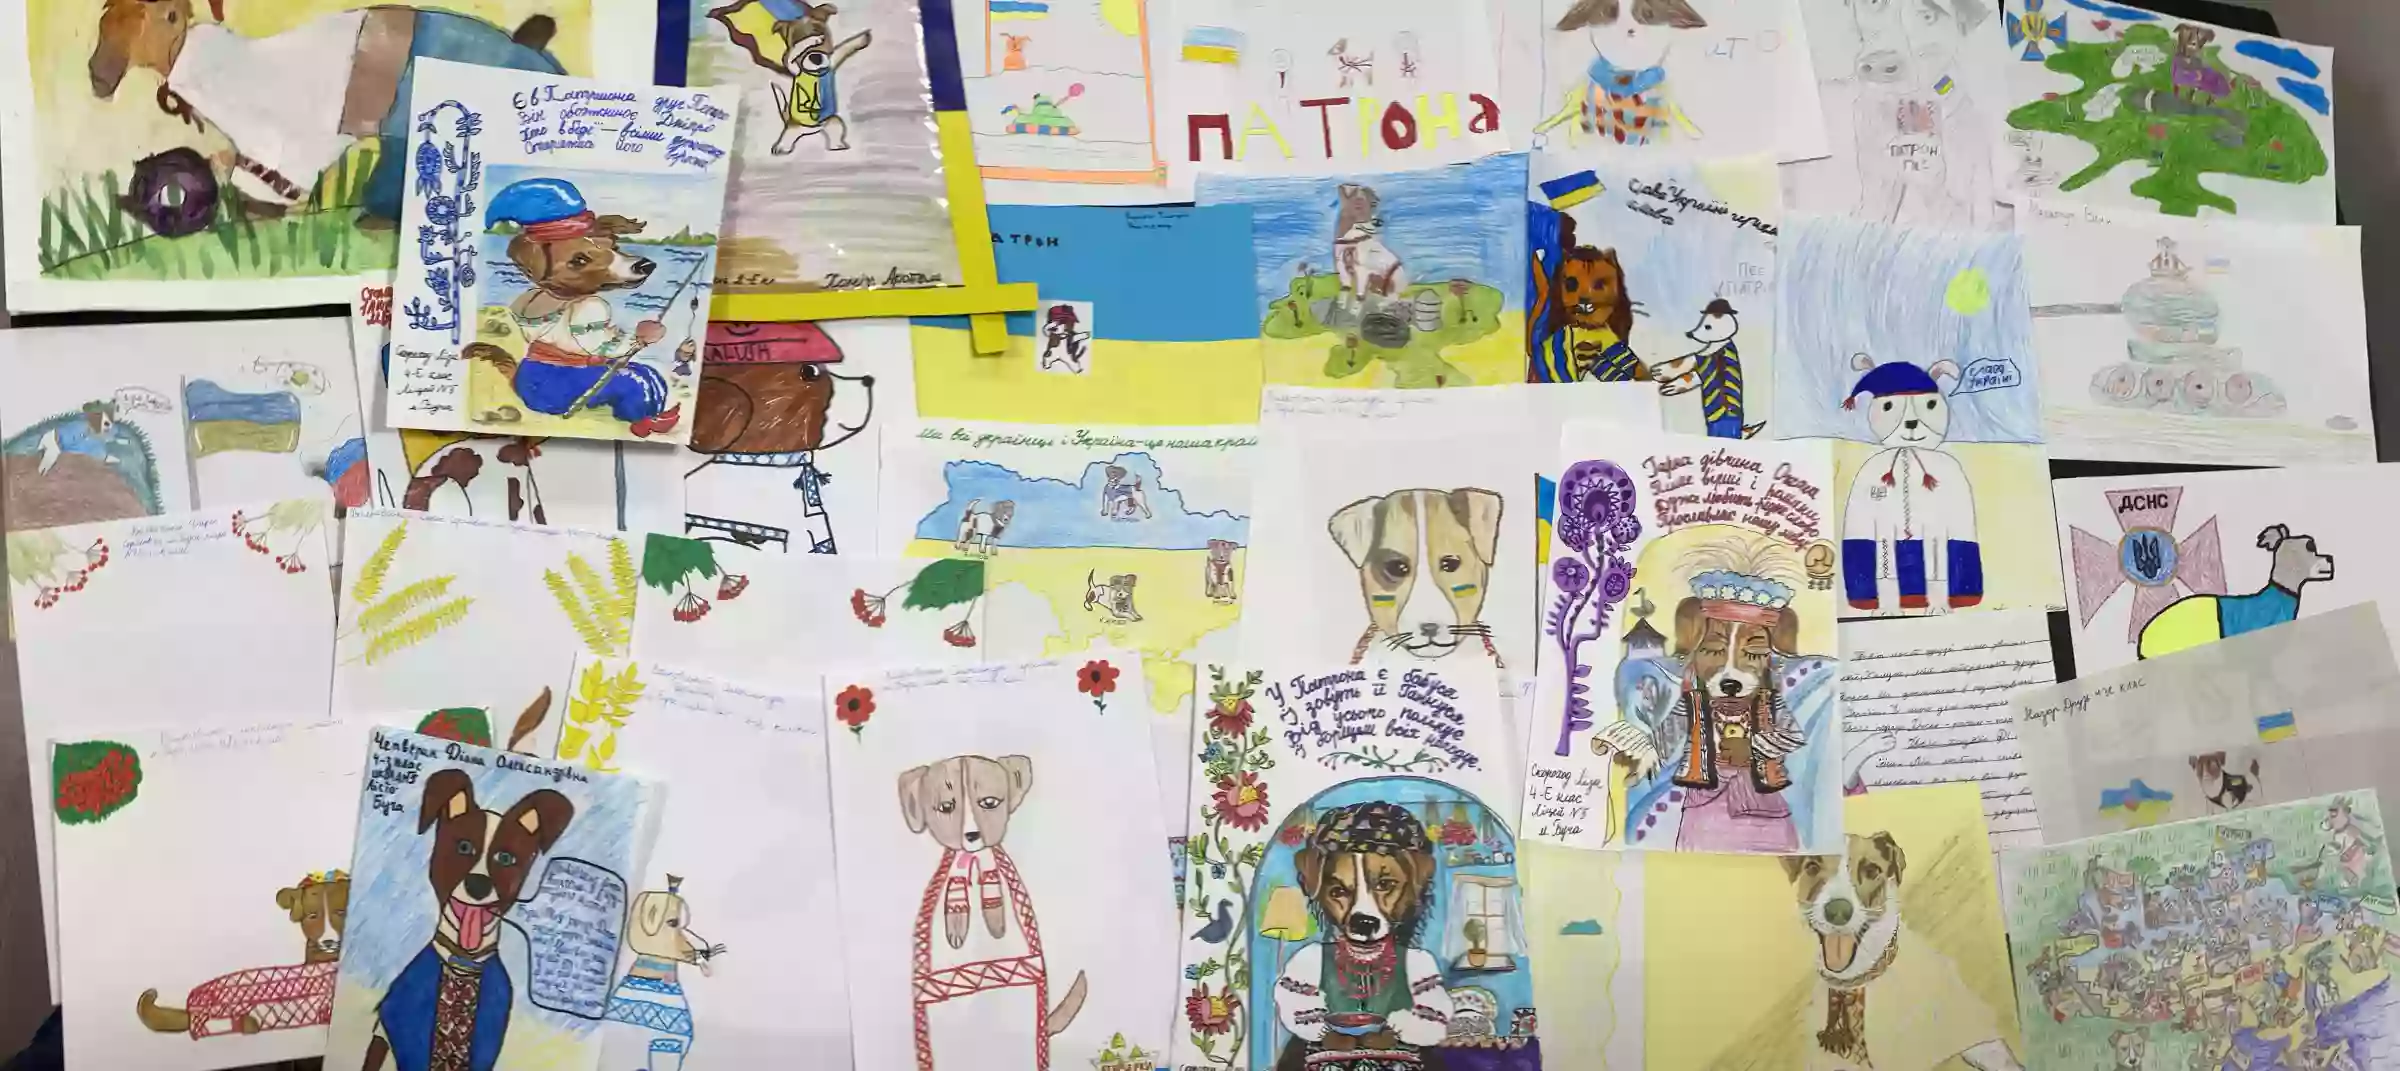 Громадська ініціатива «Друзі Патрона» запустила благодійний продаж NFT-колекції на основі дитячих малюнків